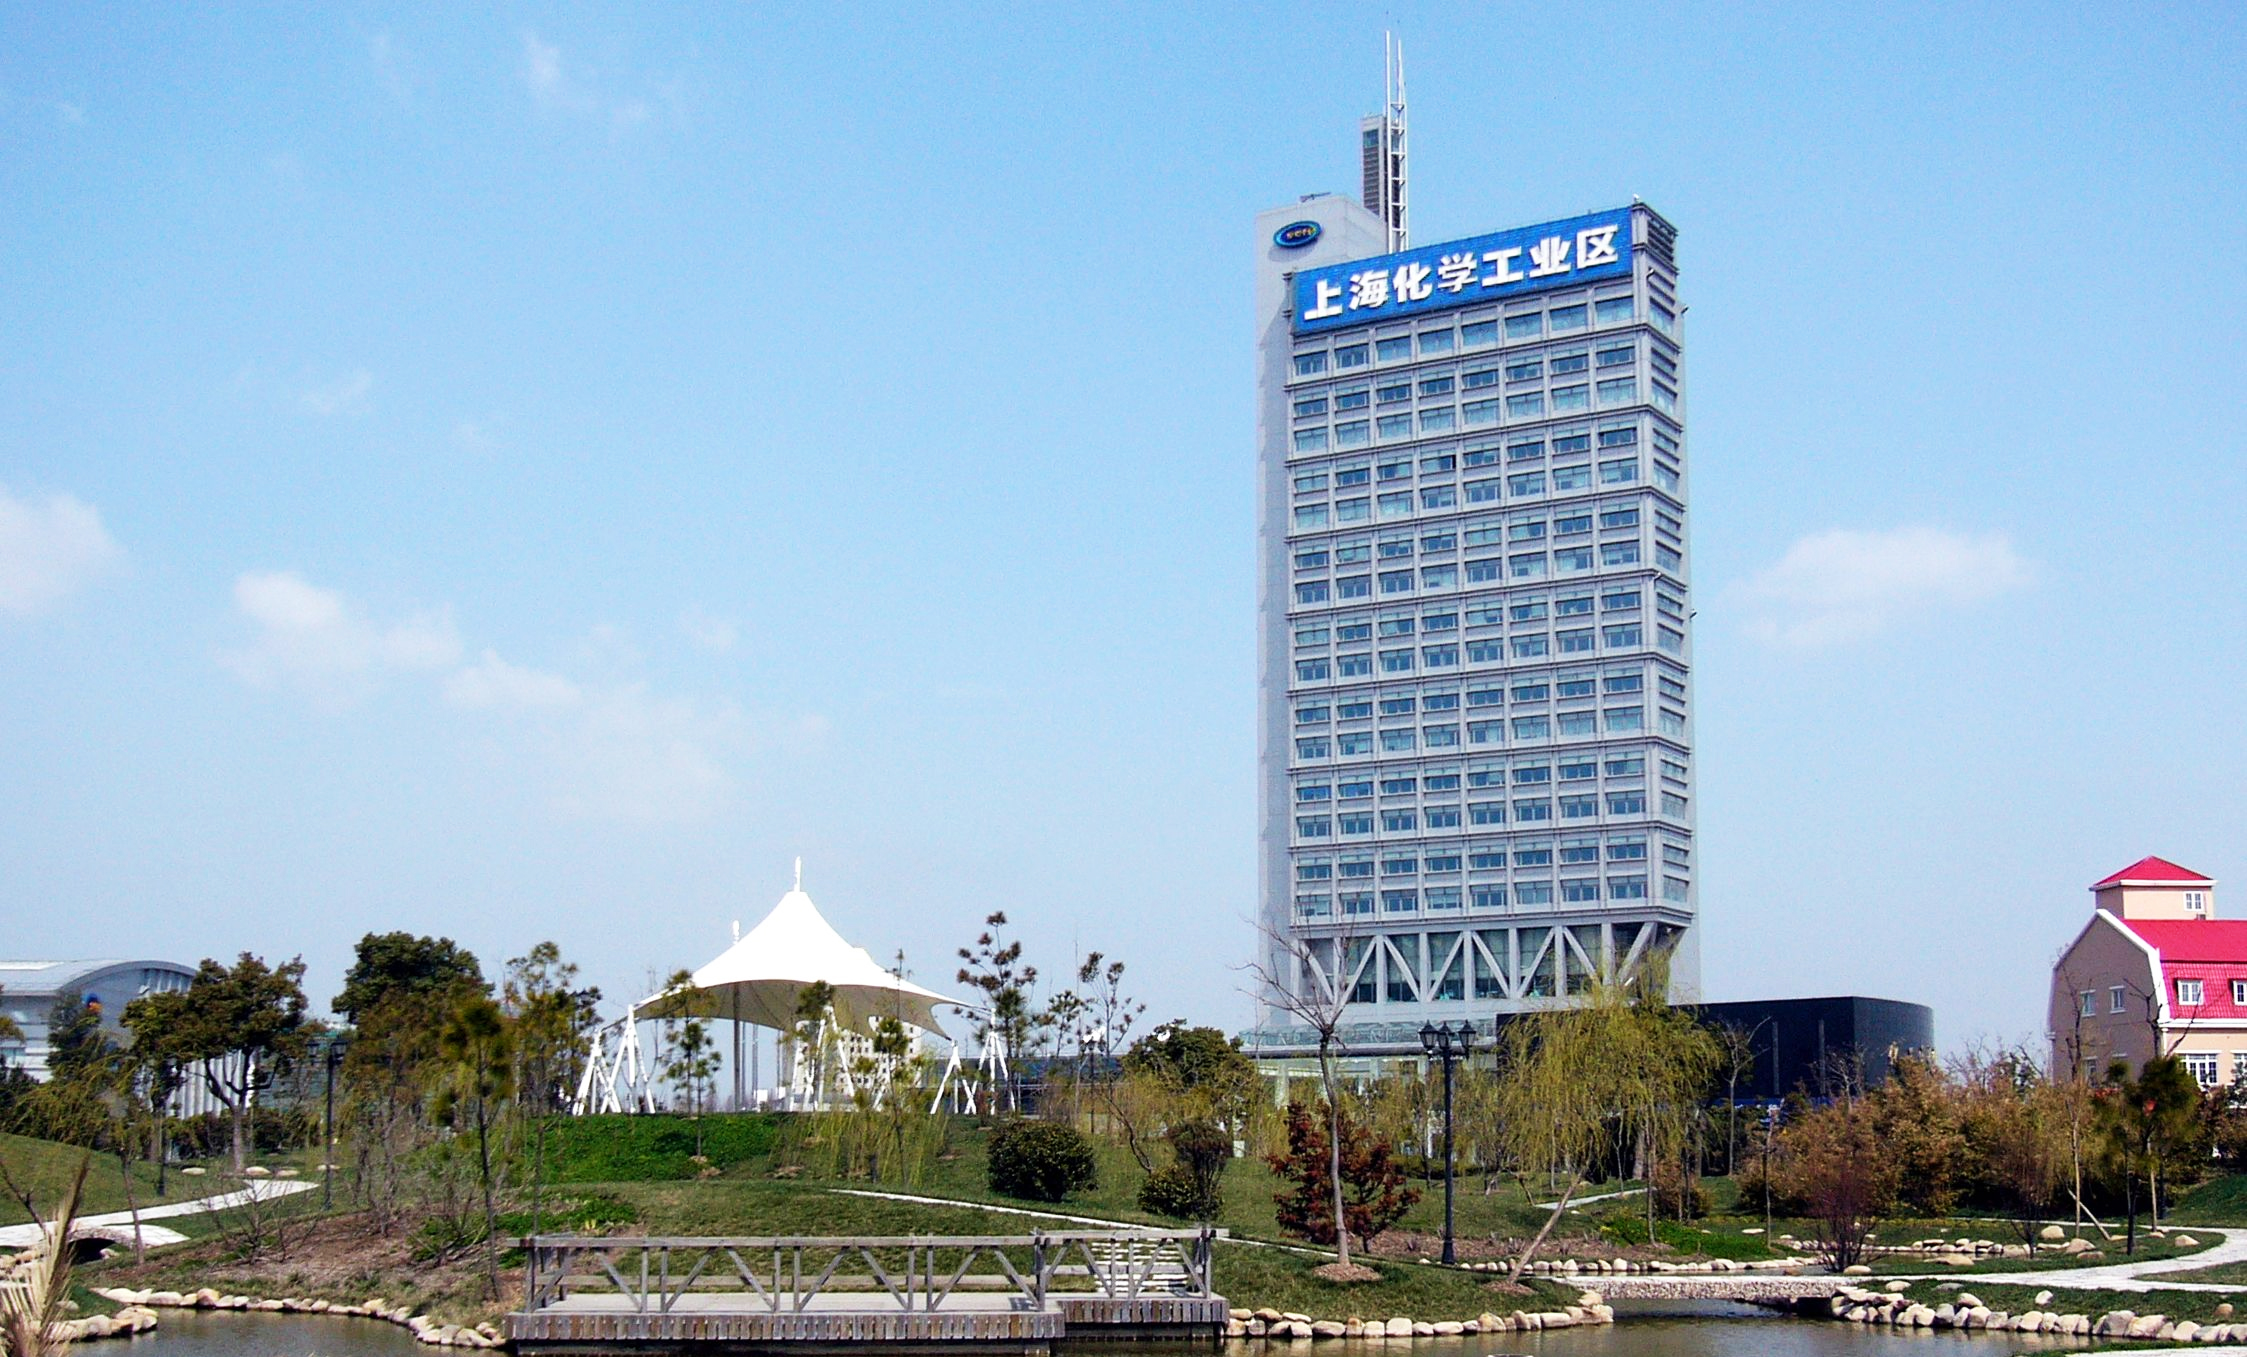 菲捷尔为上海化学工业区展示馆打造中央空调解决方案